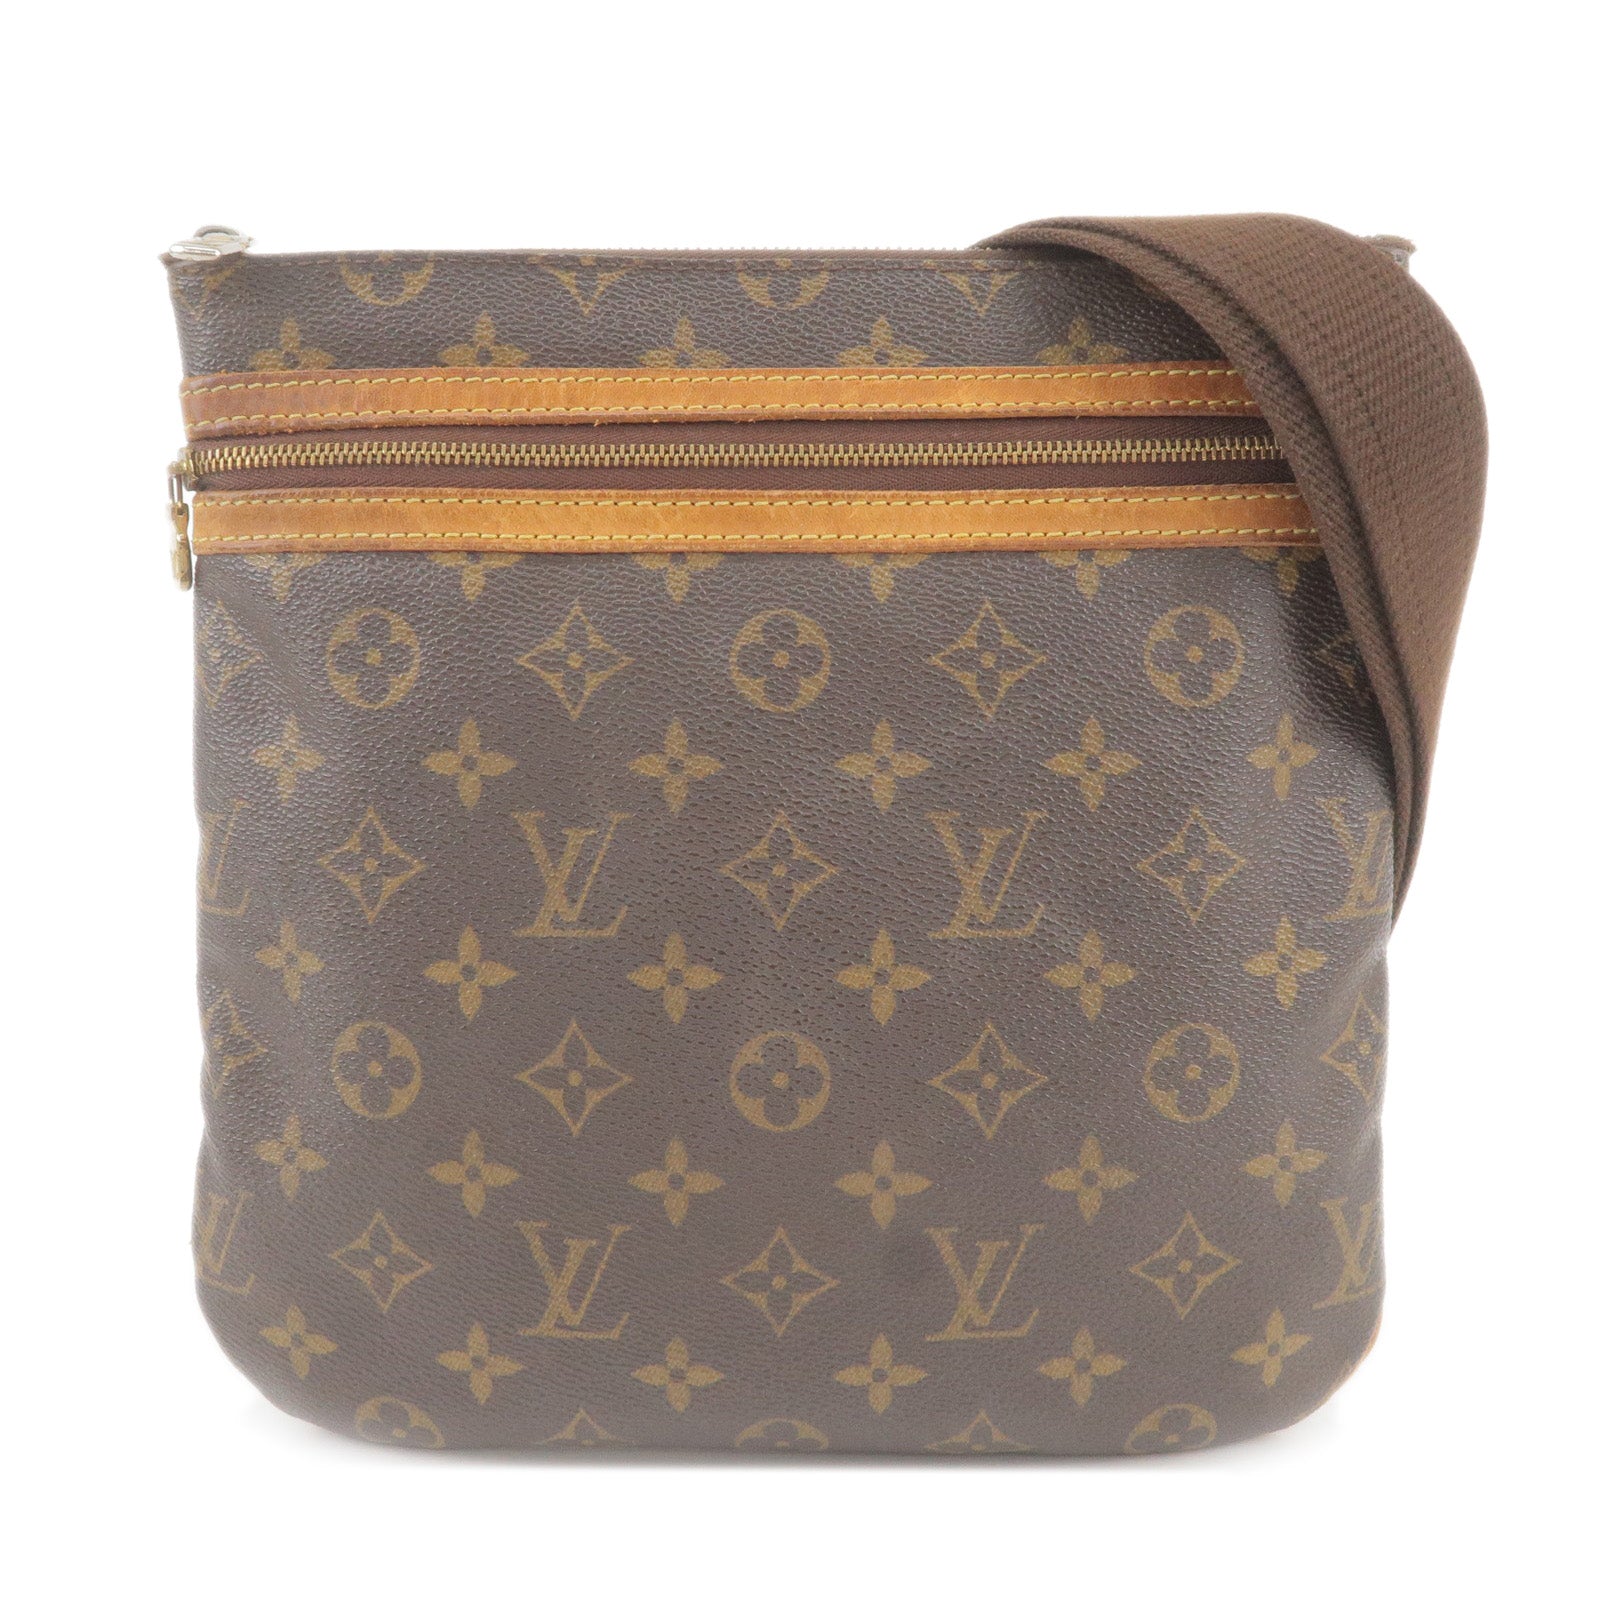 Shop for Louis Vuitton Monogram Canvas Leather Bosphore Pochette